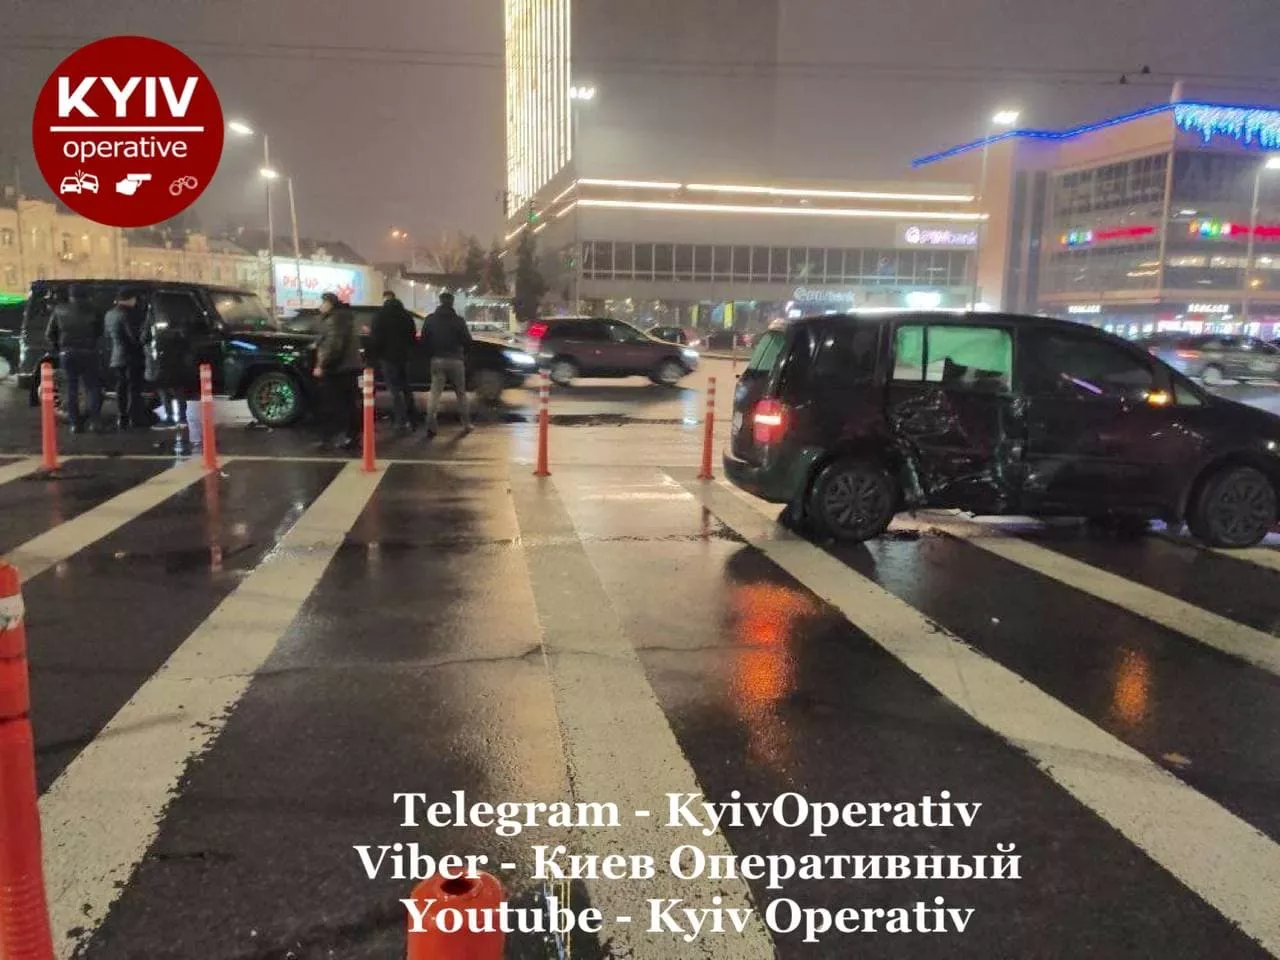 Есть ли пострадавшие в результате аварии, пока не известно/Фото: Telegram-канал "Киев оперативный"